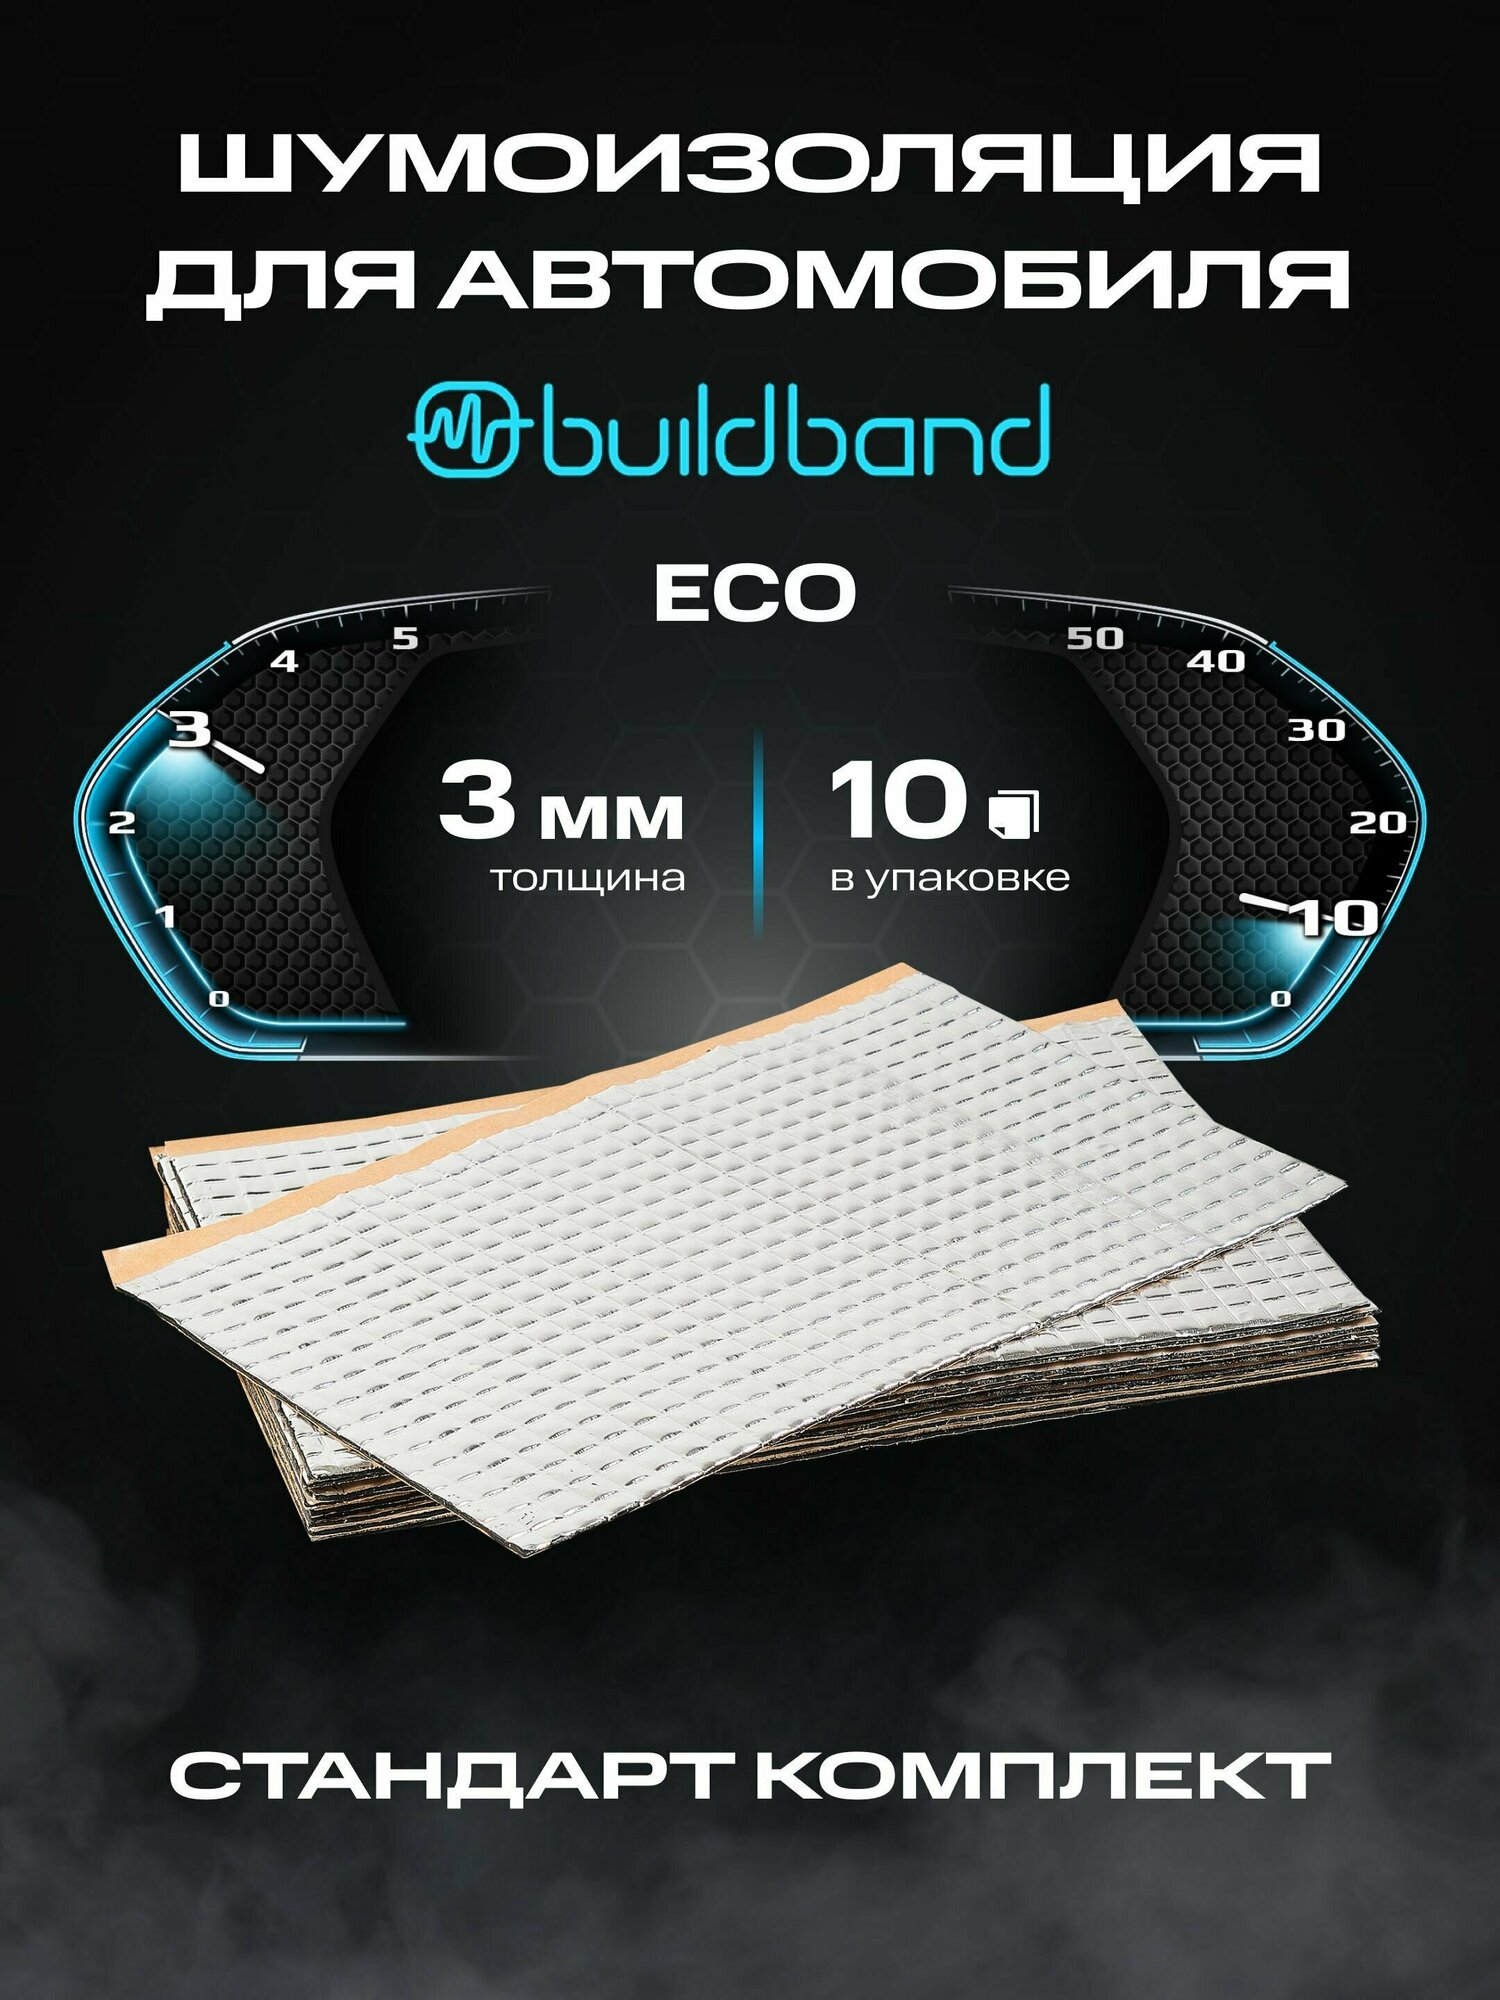 Шумоизоляция buildband ECO 3, комплект 10 листов/ Шумка для машины самоклеящаяся/звукоизоляция